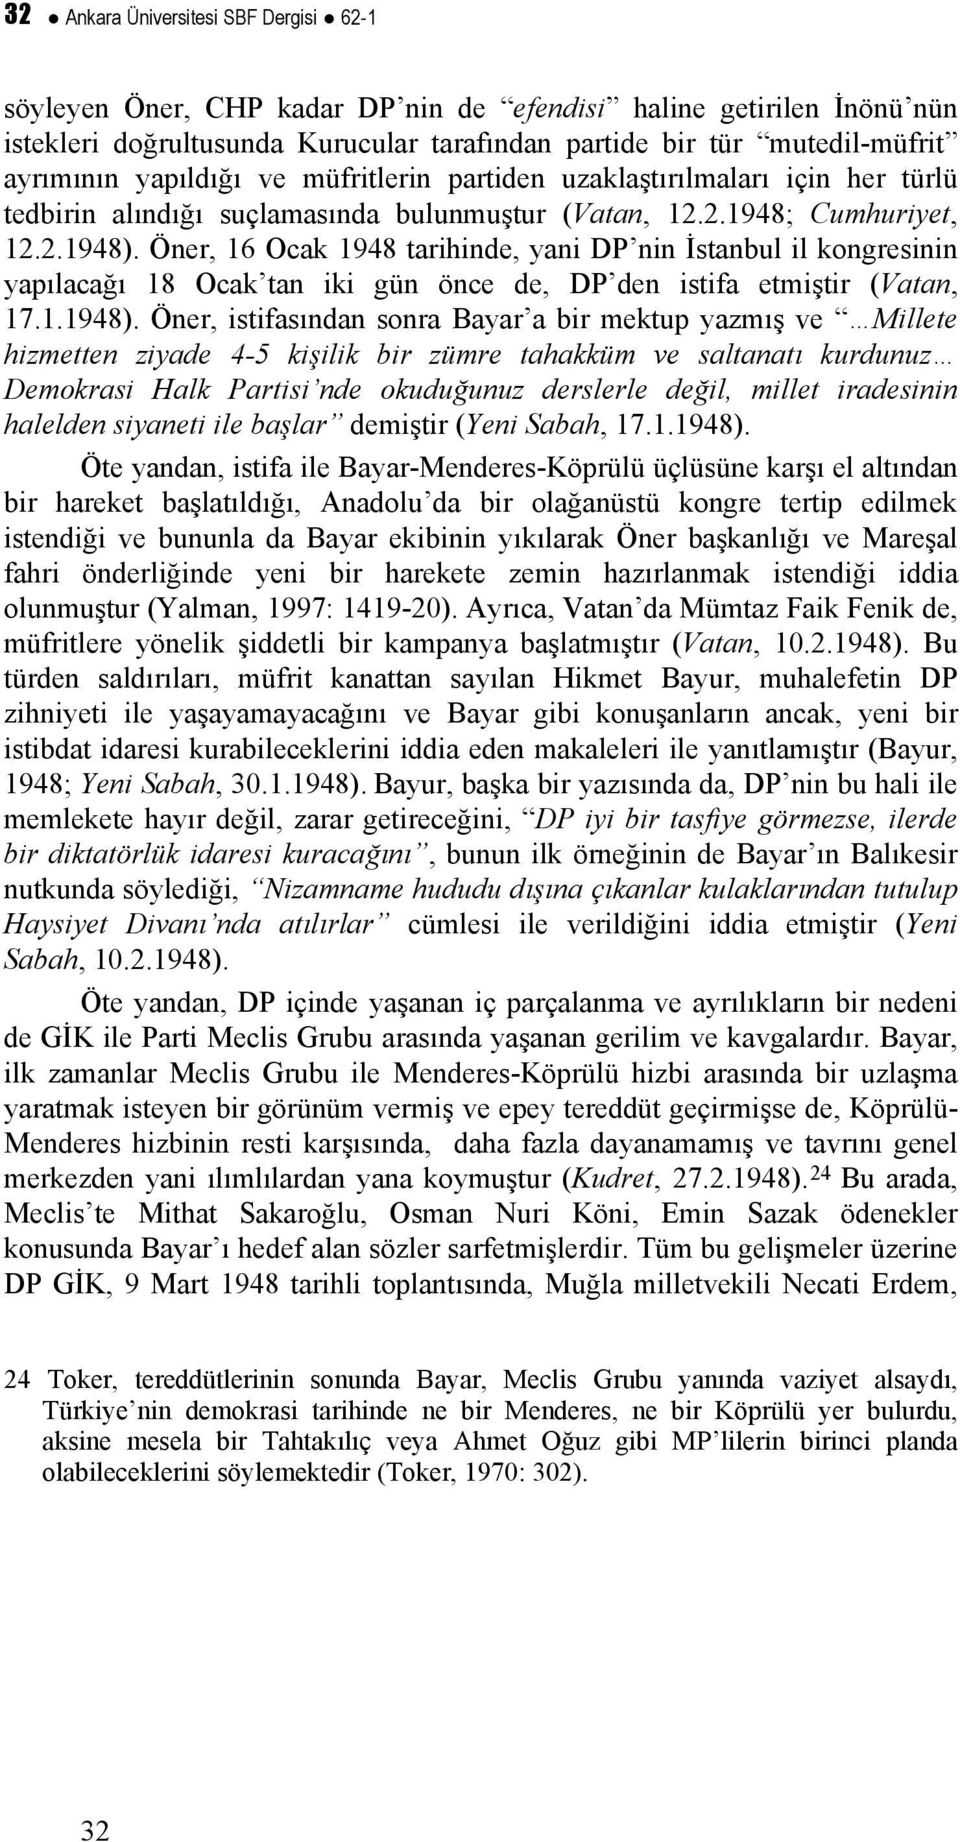 Öner, 16 Ocak 1948 tarihinde, yani DP nin İstanbul il kongresinin yapılacağı 18 Ocak tan iki gün önce de, DP den istifa etmiştir (Vatan, 17.1.1948).